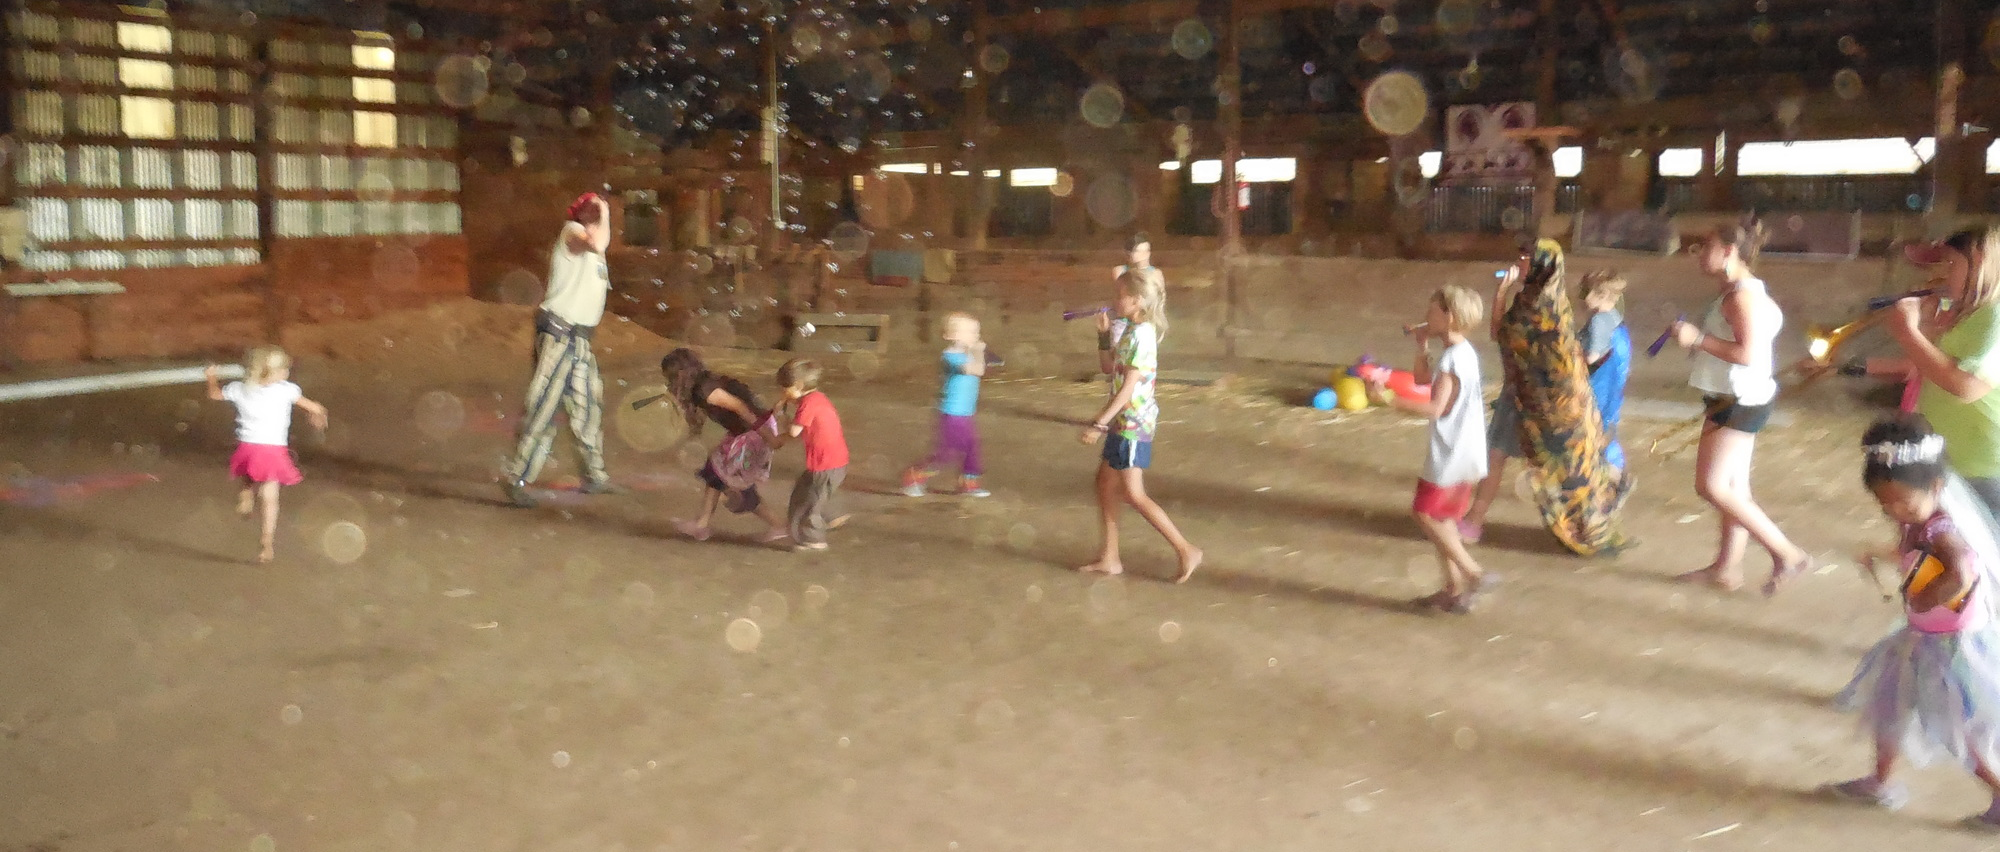 Children playing in barn.